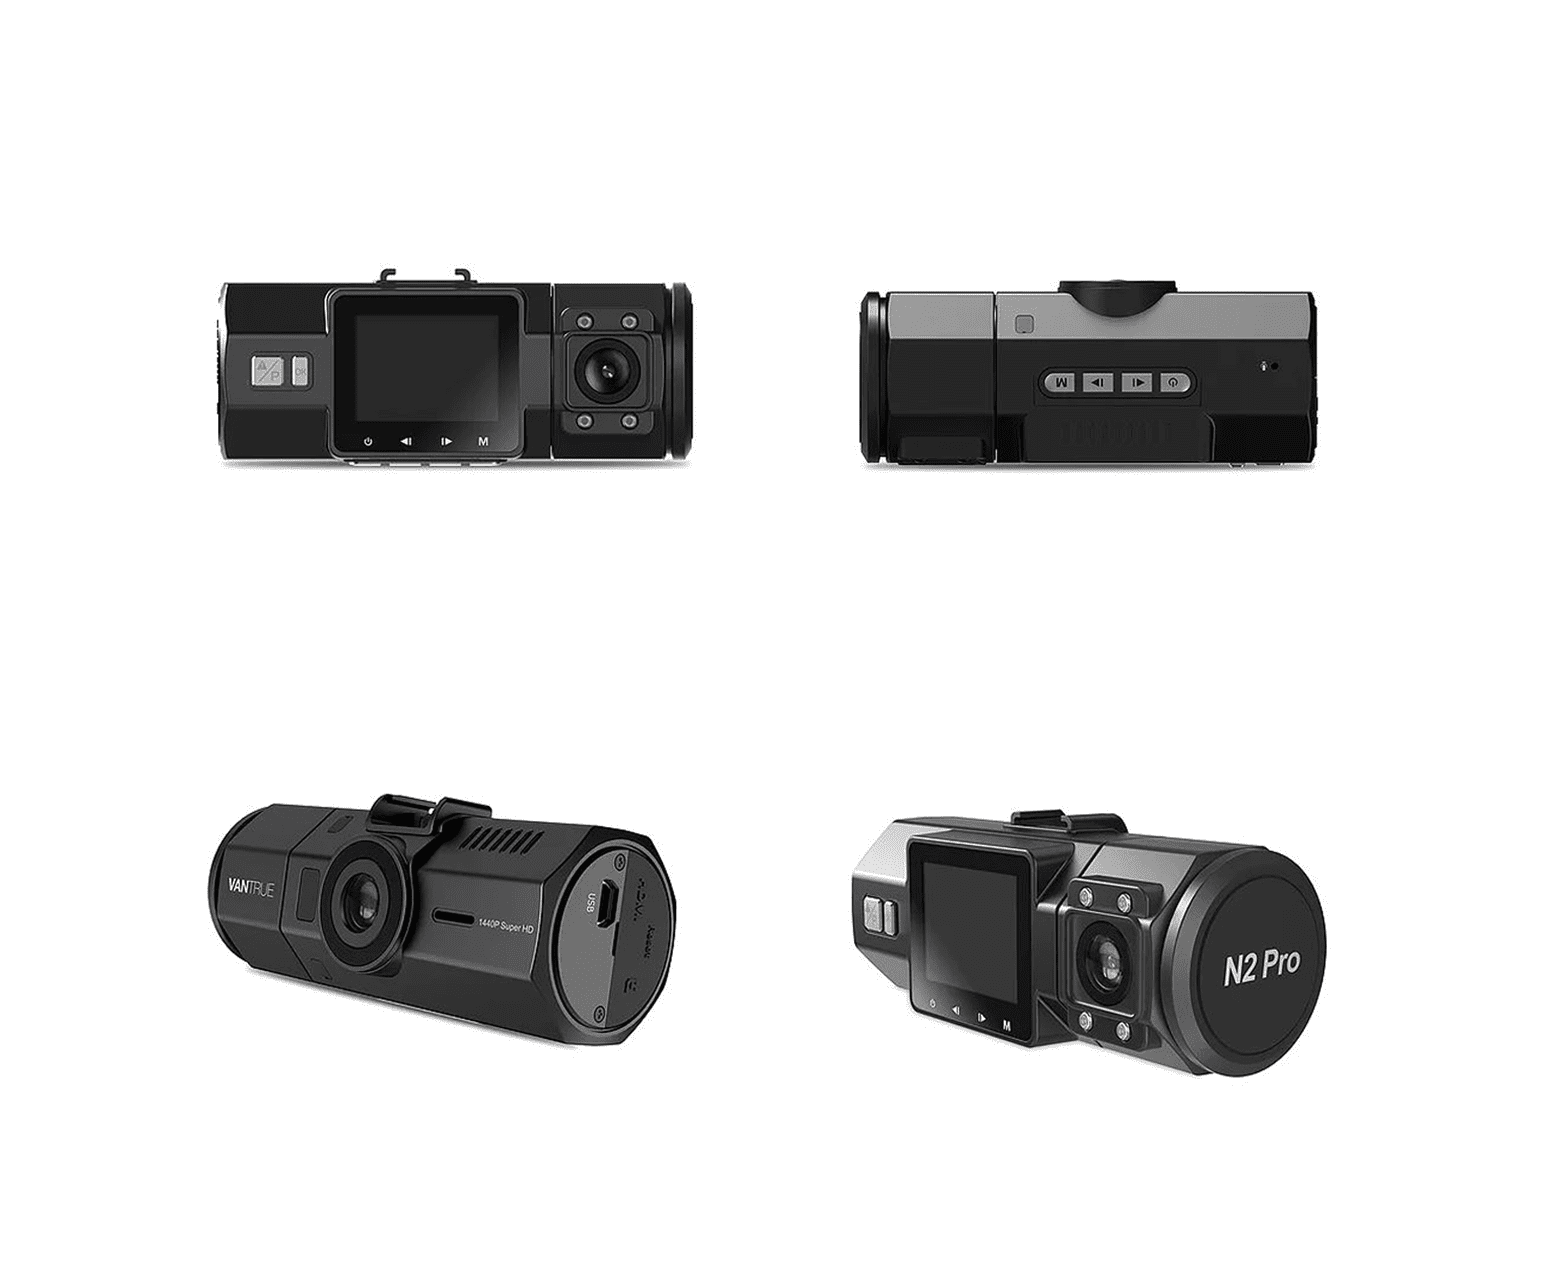 Vantrue N2 Pro Çift 1080p Araç Kamerası